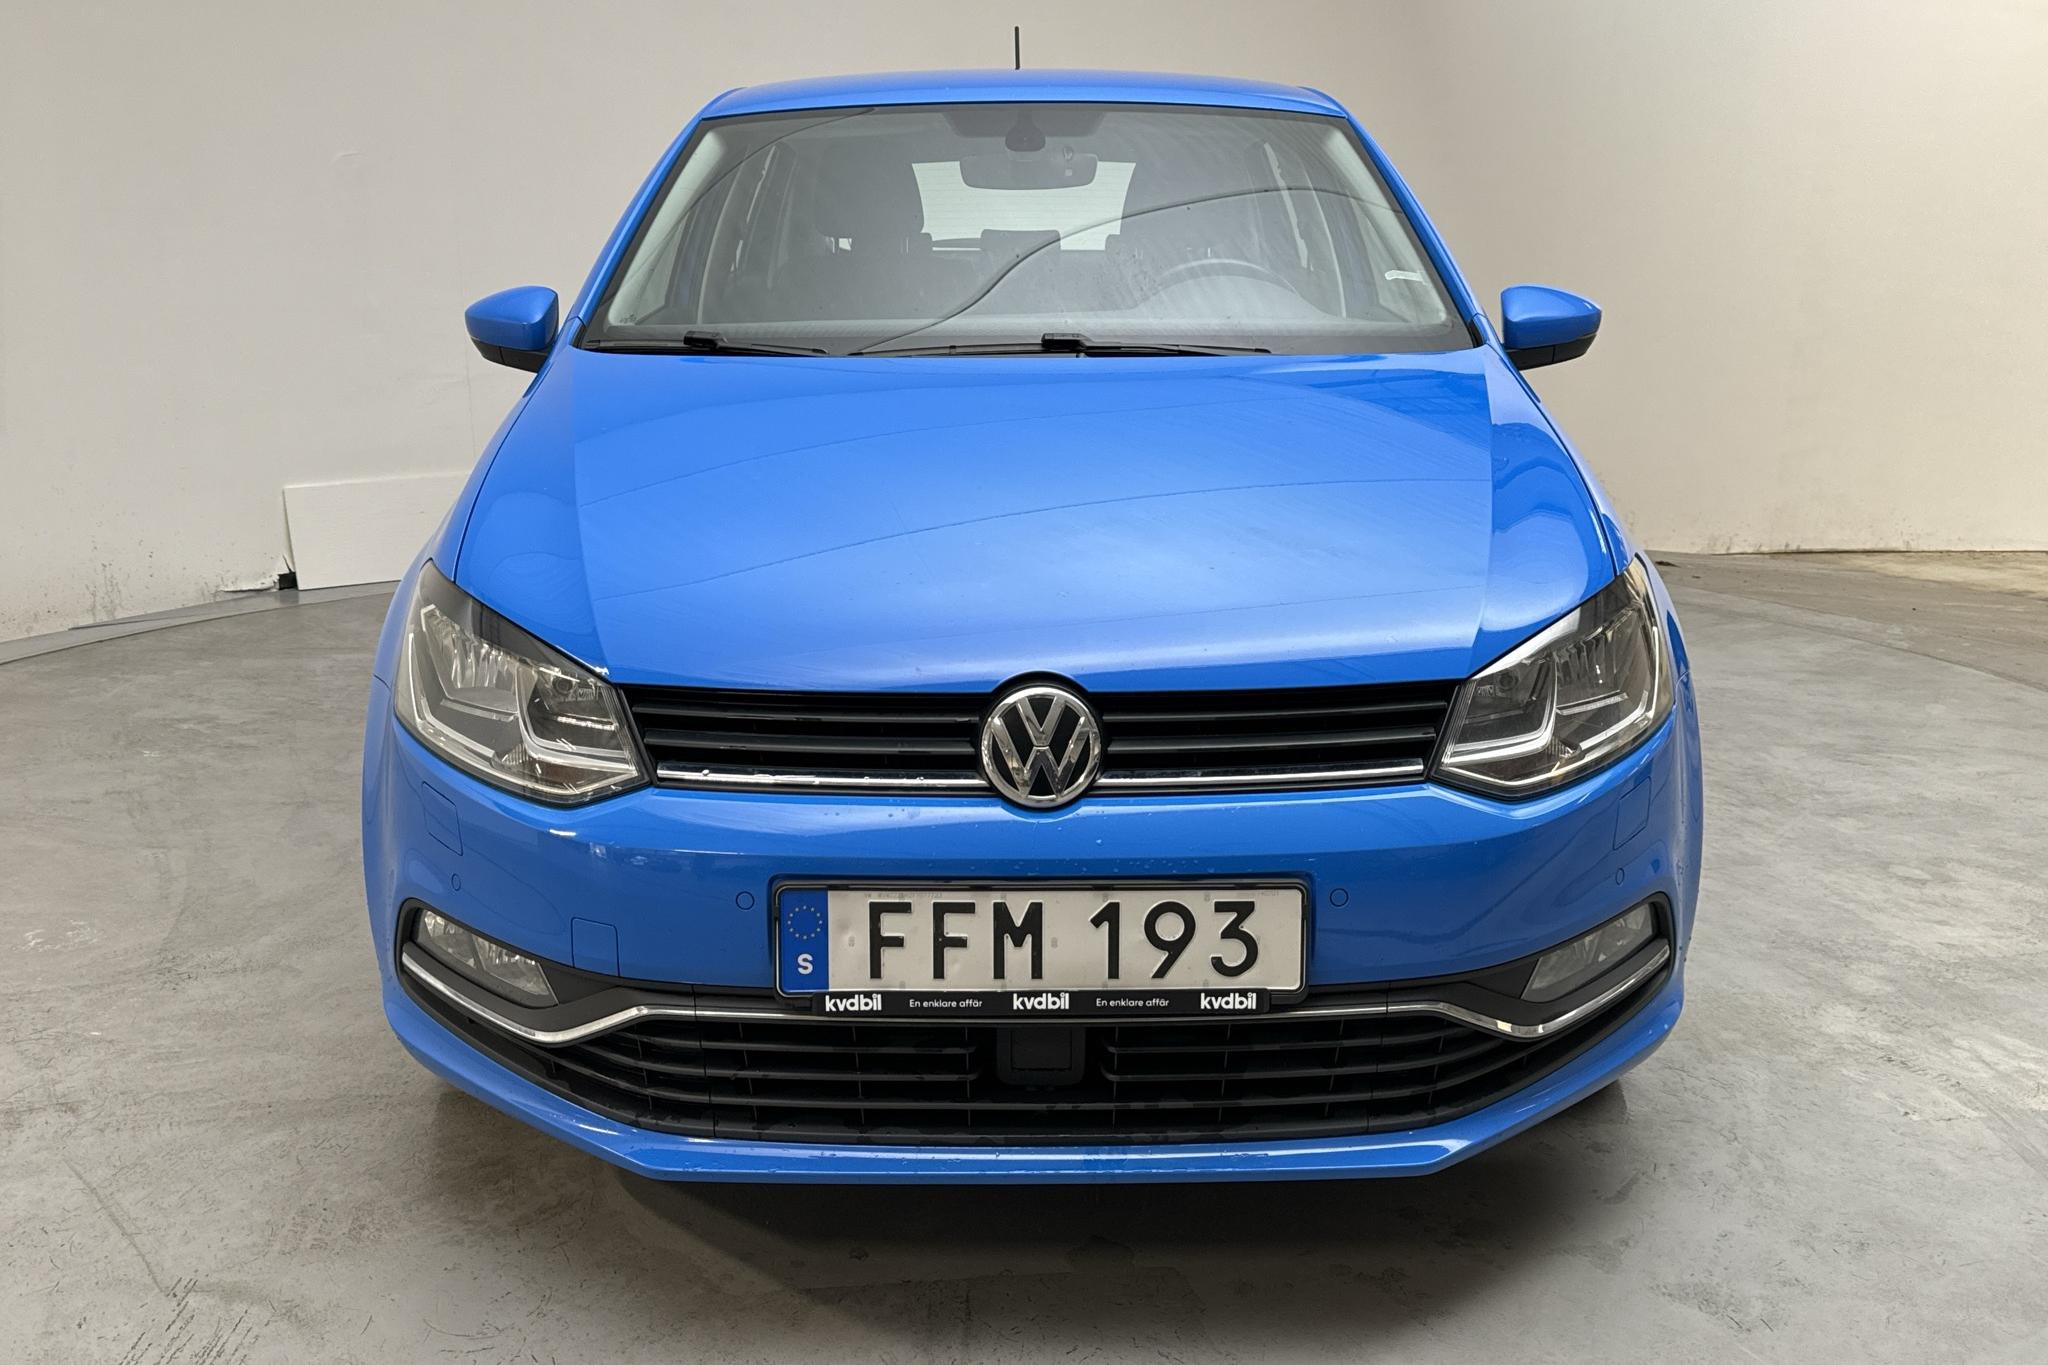 VW Polo 1.2 TSI 5dr (90hk) - 136 260 km - Manual - blue - 2015